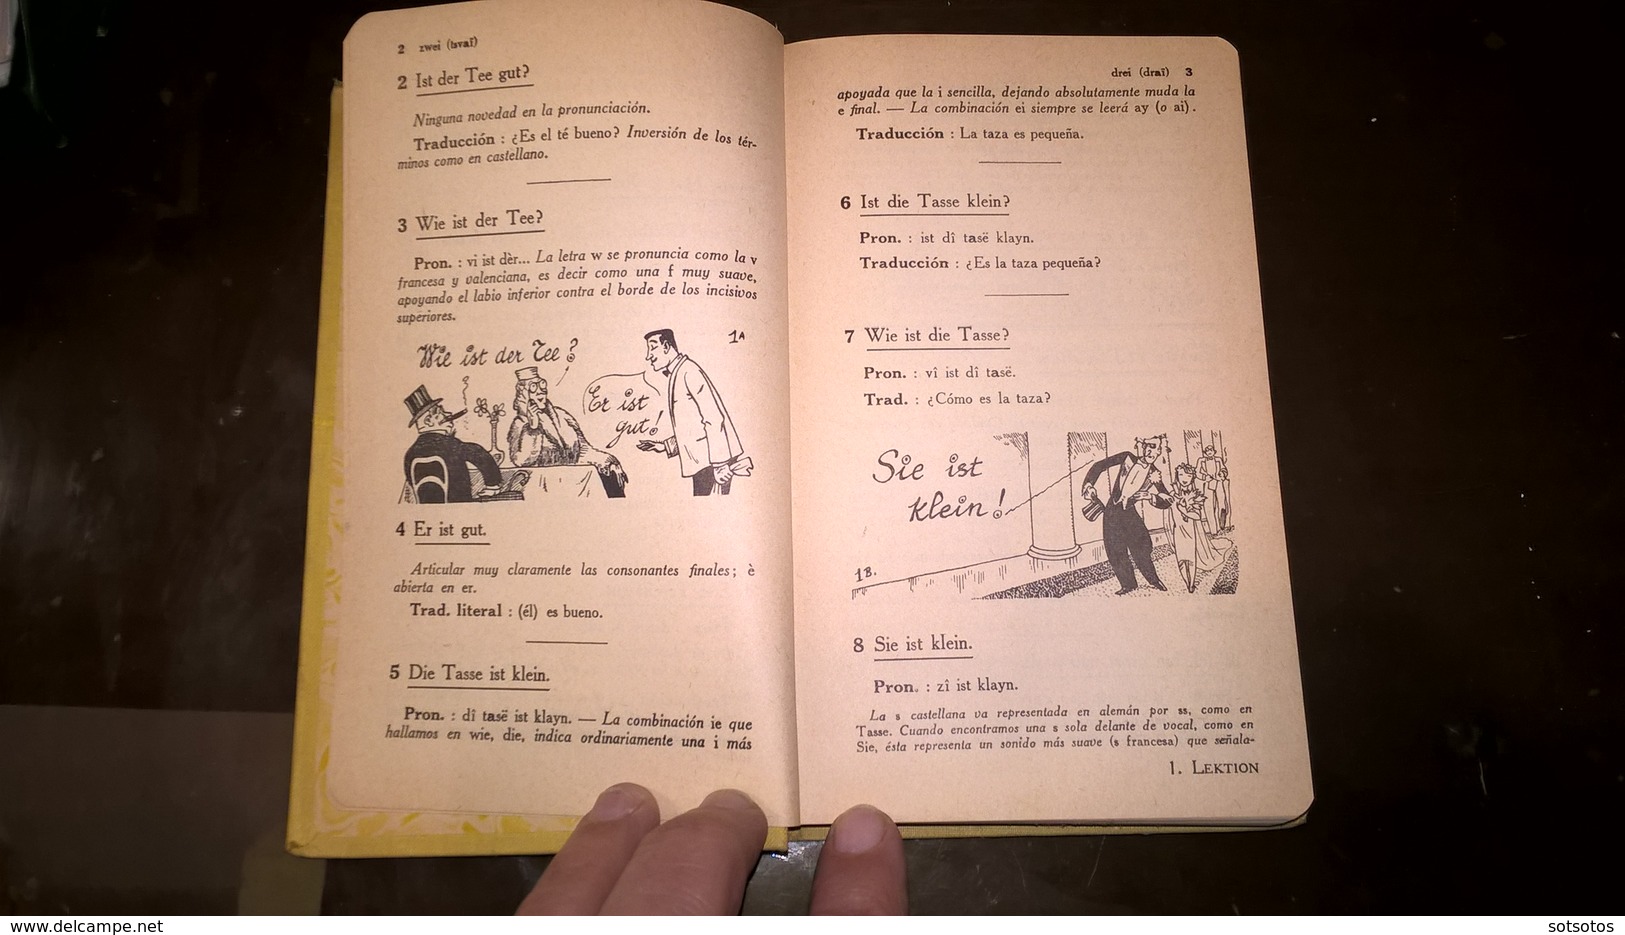 EL ALEMAN Sin ESFUERZO Por A. CHEREL - METODO DIARIO ASSIMIL - PARIS (1959) - 376 Pages (11,50x18 Cent) - IN VERY GOOD - Obras Linguísticas